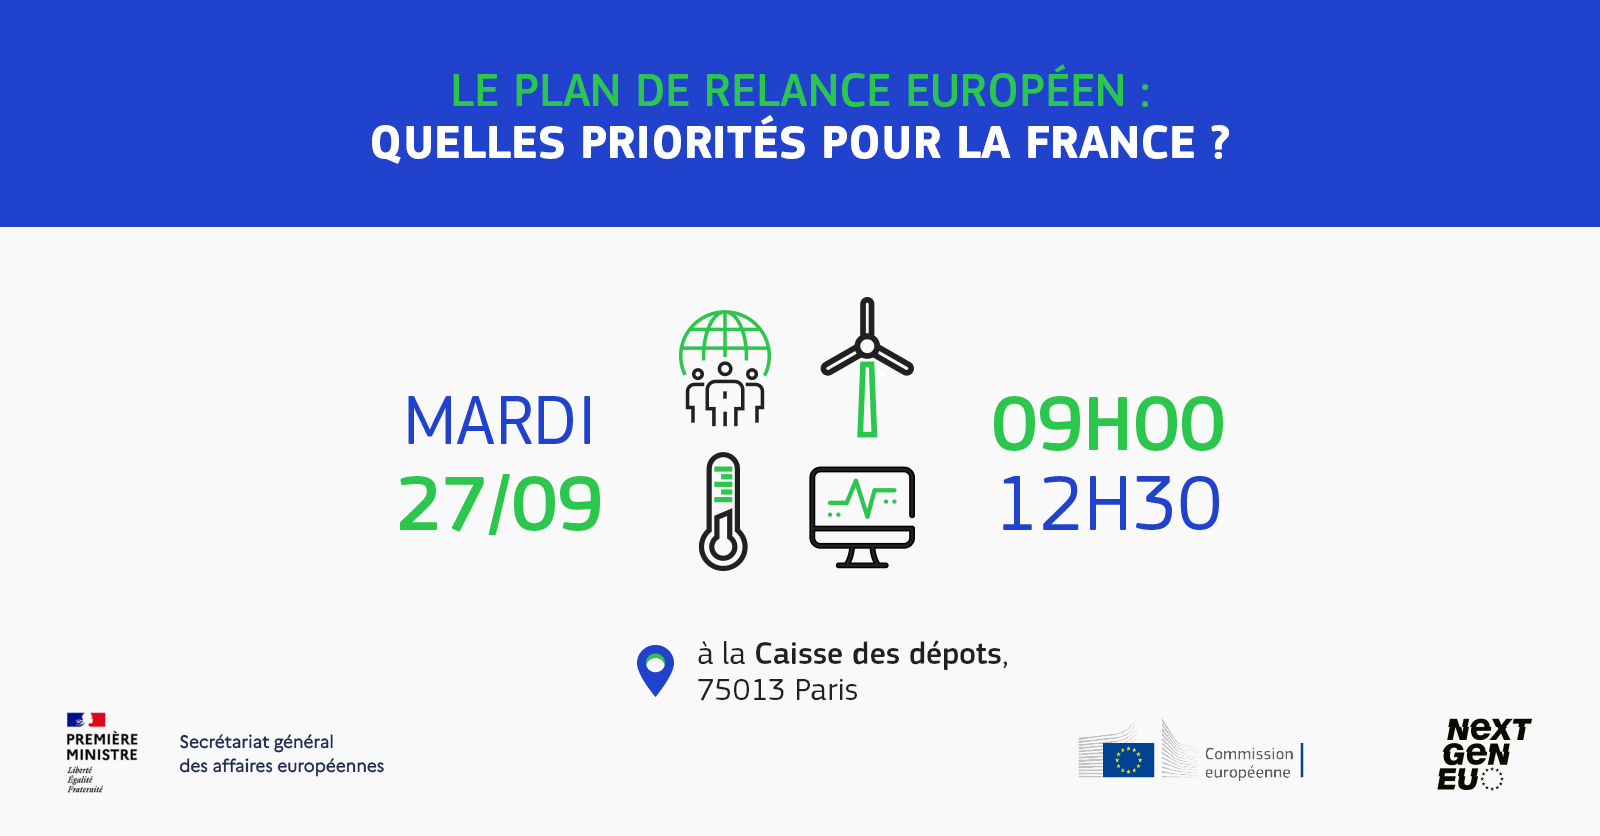 Le plan de relance européen : quelles priorités pour la France ?